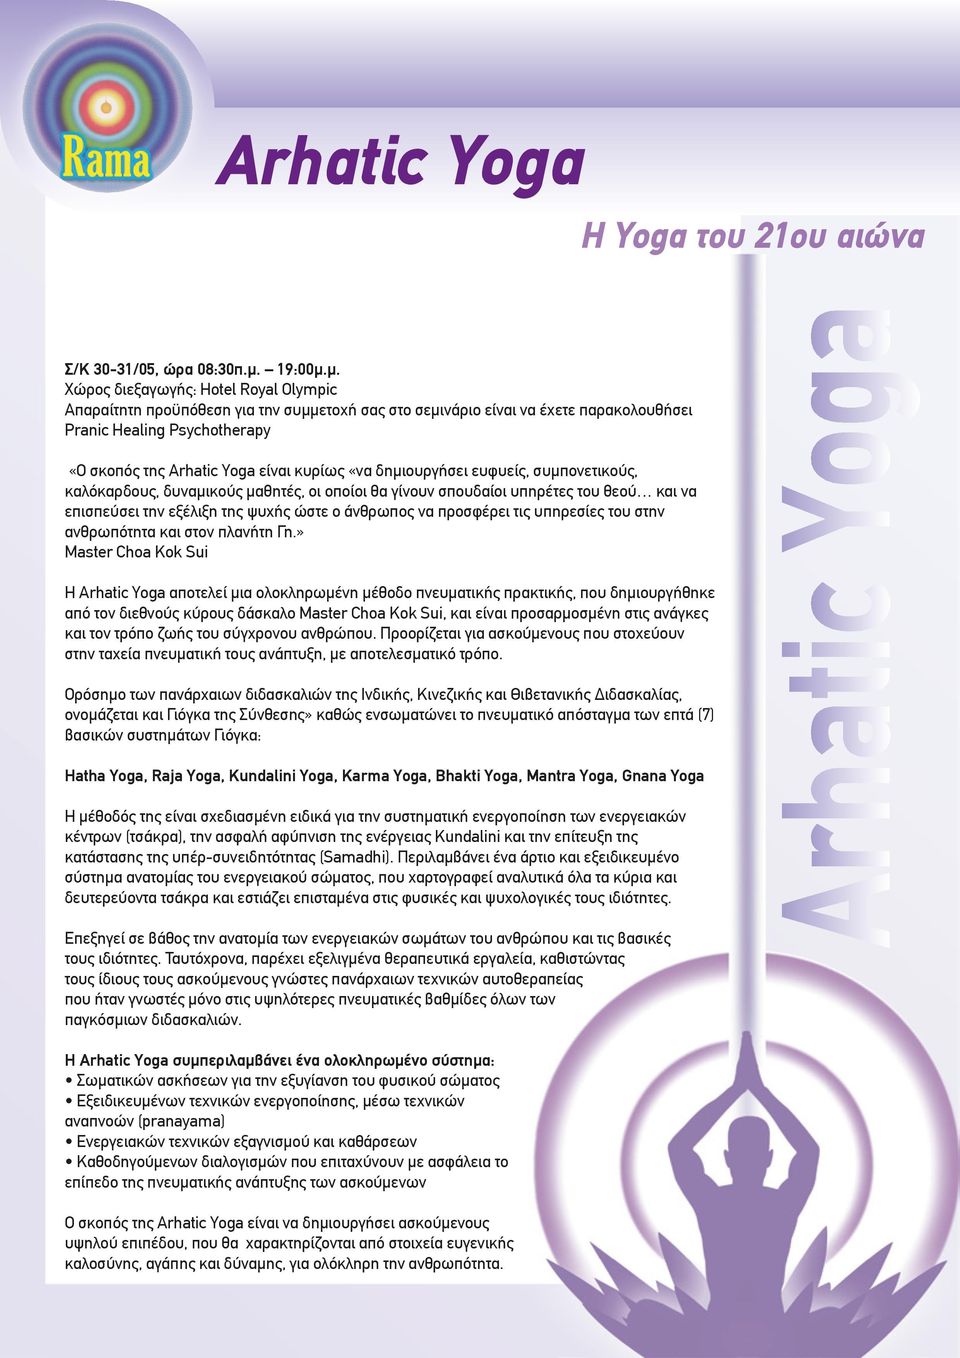 µ. Χώρος διεξαγωγής: Hotel Royal Olympic Απαραίτητη προϋπόθεση για την συµµετοχή σας στο σεµινάριο είναι να έχετε παρακολουθήσει Pranic Healing Psychotherapy «Ο σκοπός της Arhatic Yoga είναι κυρίως